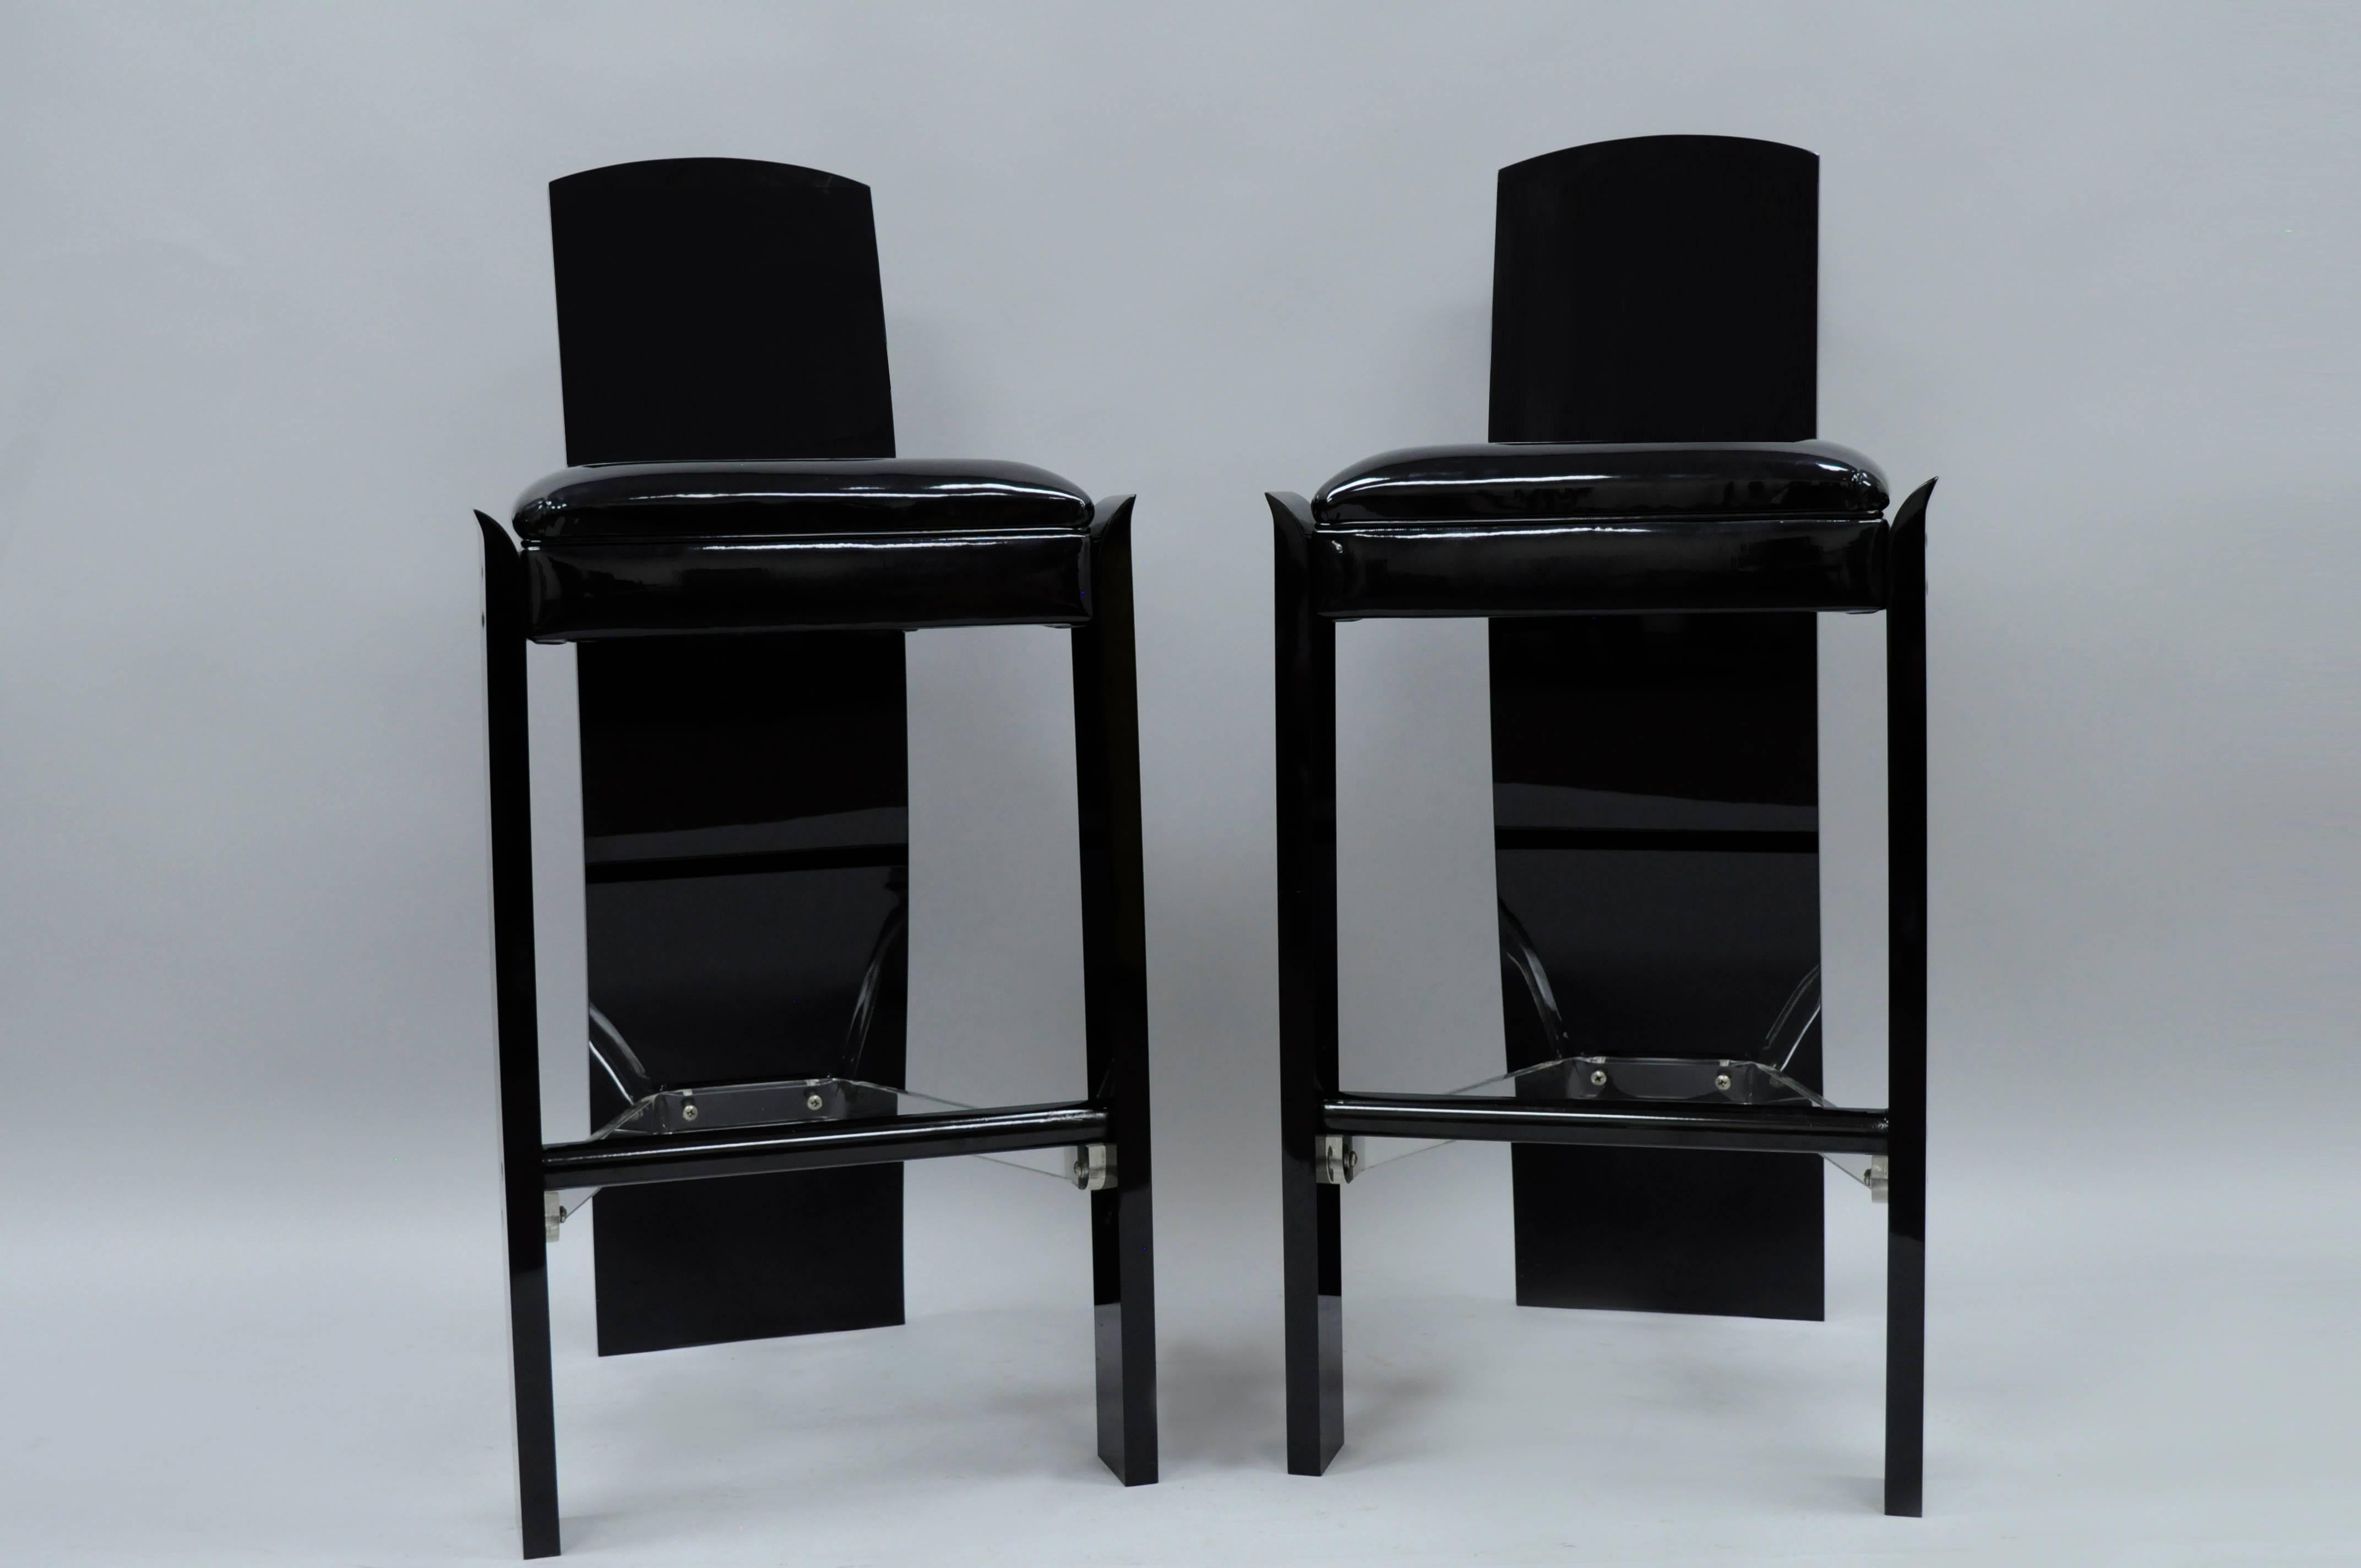 Zwei skulpturale Barhocker aus schwarzem Acrylglas von Hill Manufacturing in der Art von Charles Hollis Jones, Mid Century Modern. Der Artikel zeichnet sich durch eine dicke Lucite-Konstruktion, durchsichtige Lucite-Lehnenstützen, schwarze